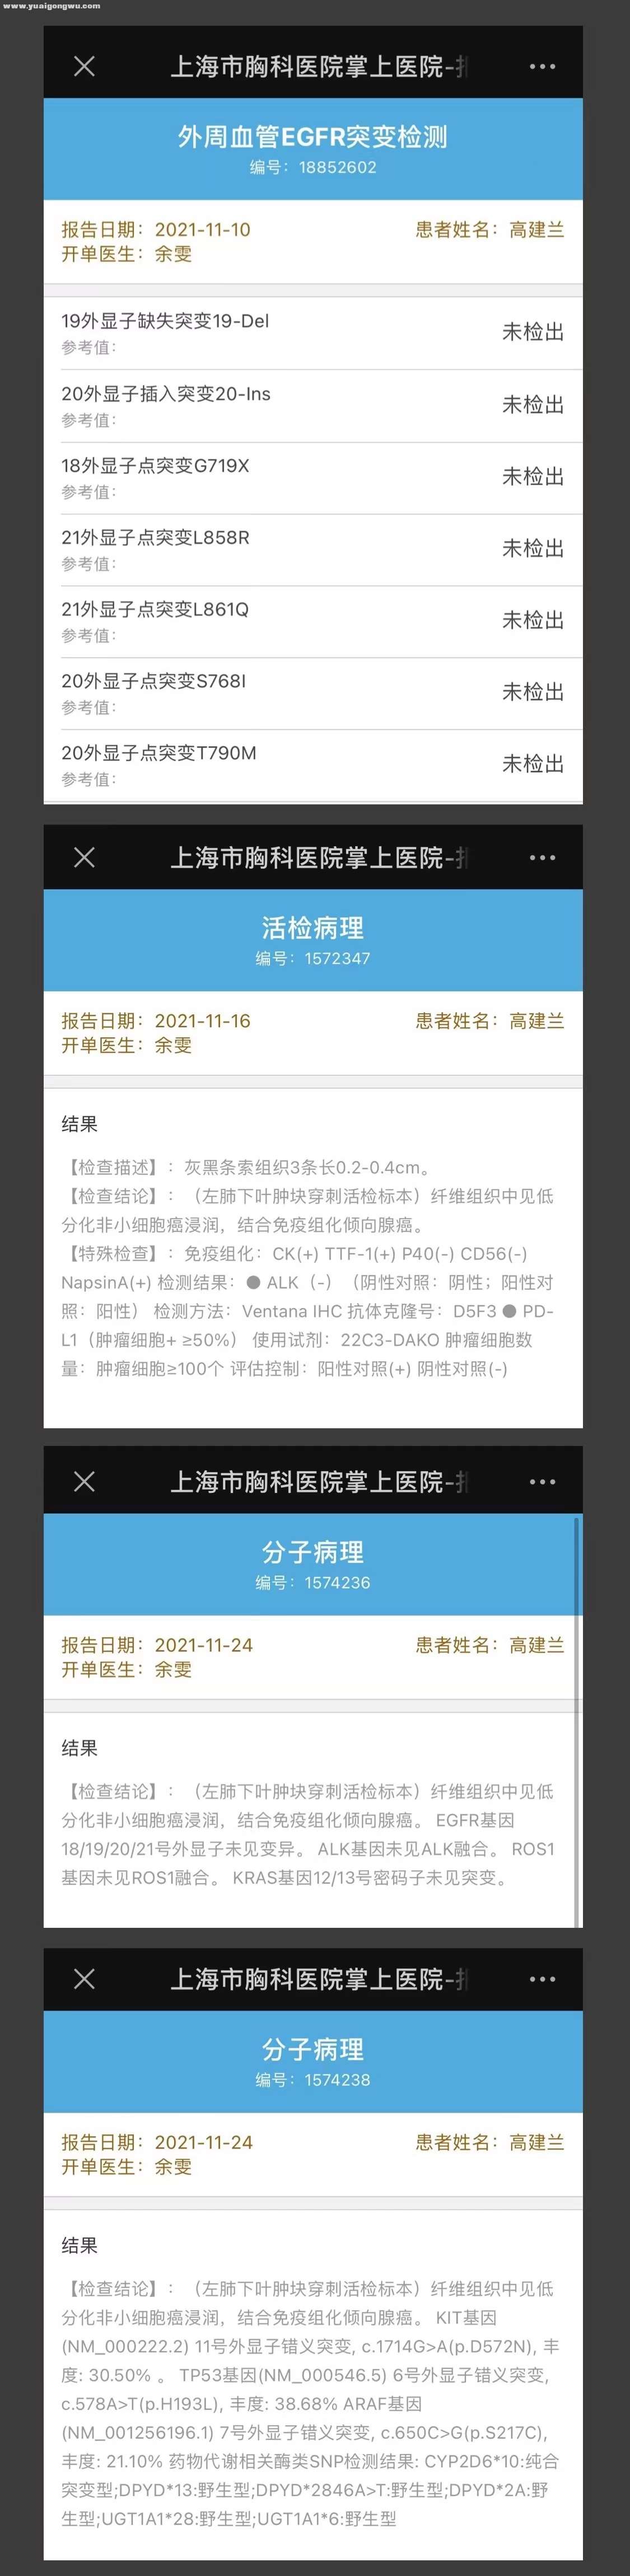 上海胸科2021.11月基因检测报告